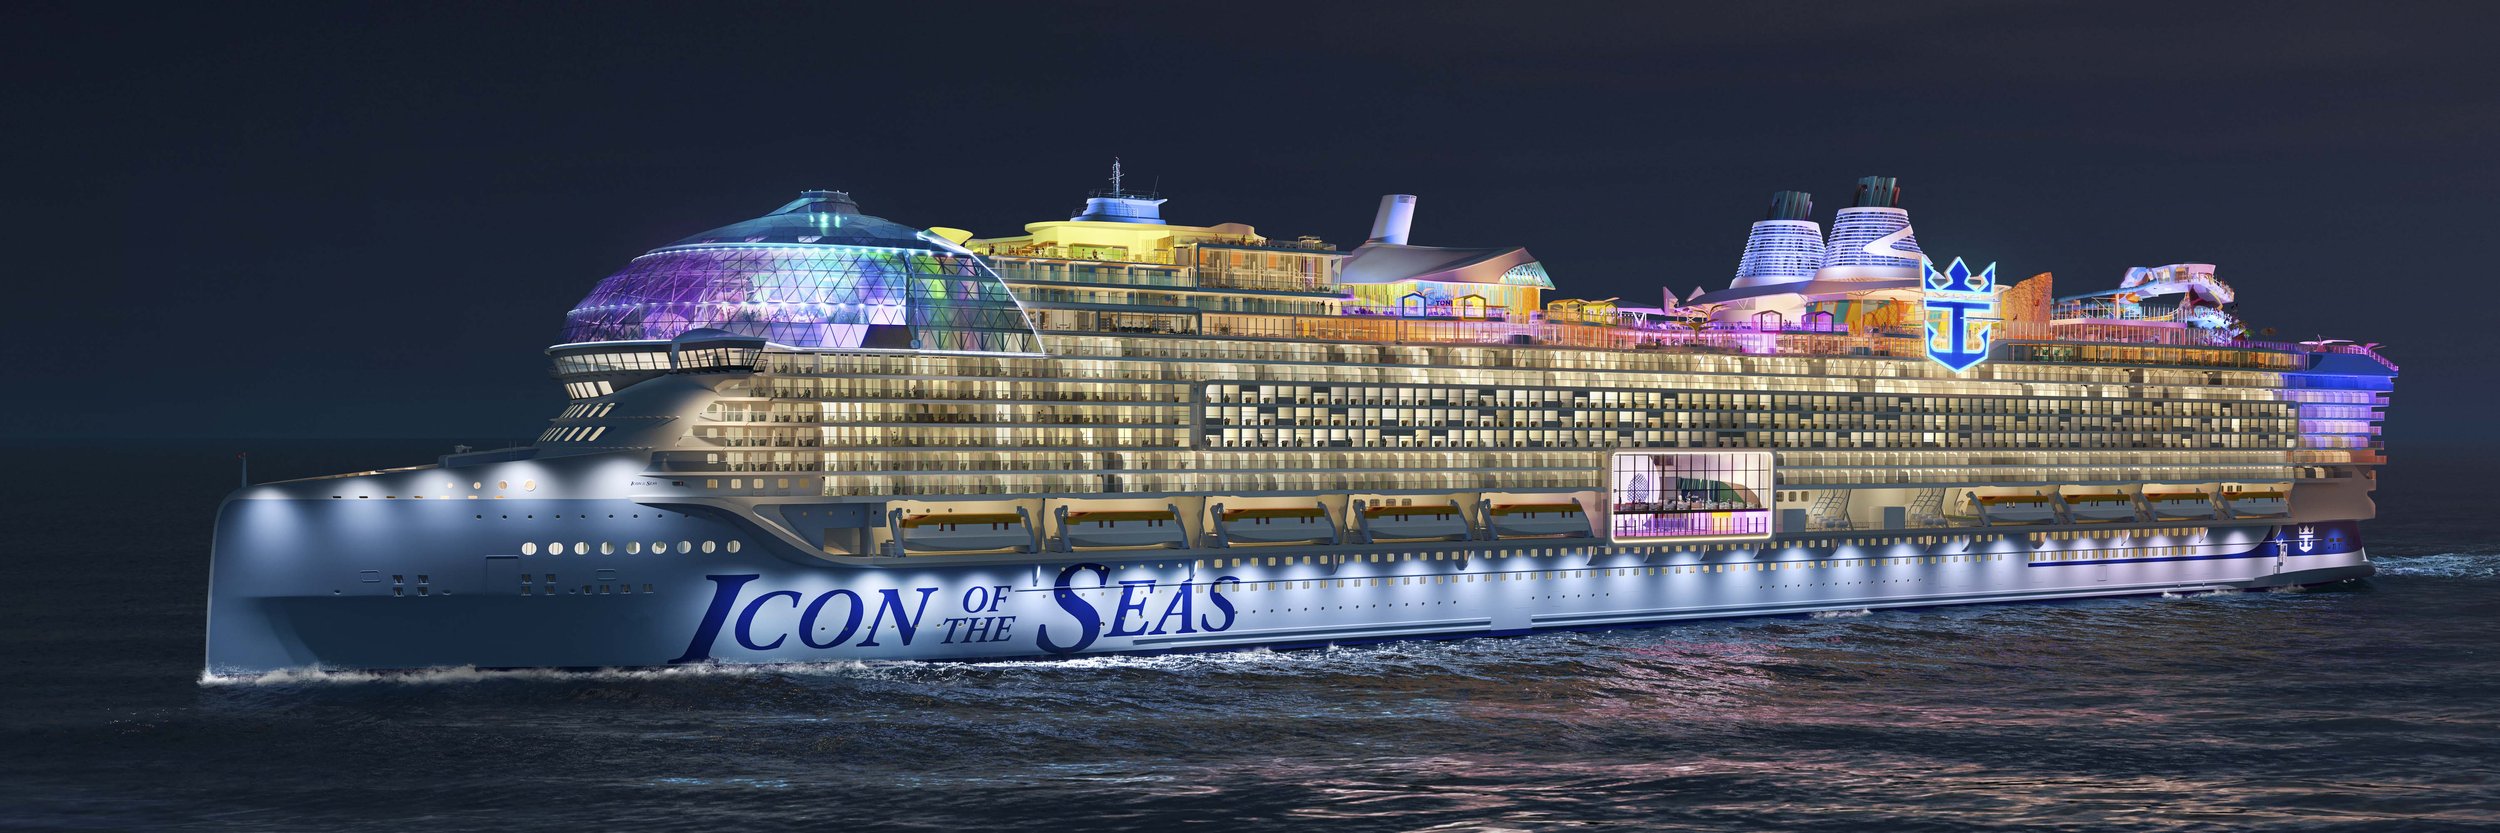 Энергии февраля 2024 года. Самый большой круизный лайнер в мире 2023. Круизный лайнер icon of the Seas. Самый большой круизный лайнер в мире 2022. Royal Caribbean International корабли.